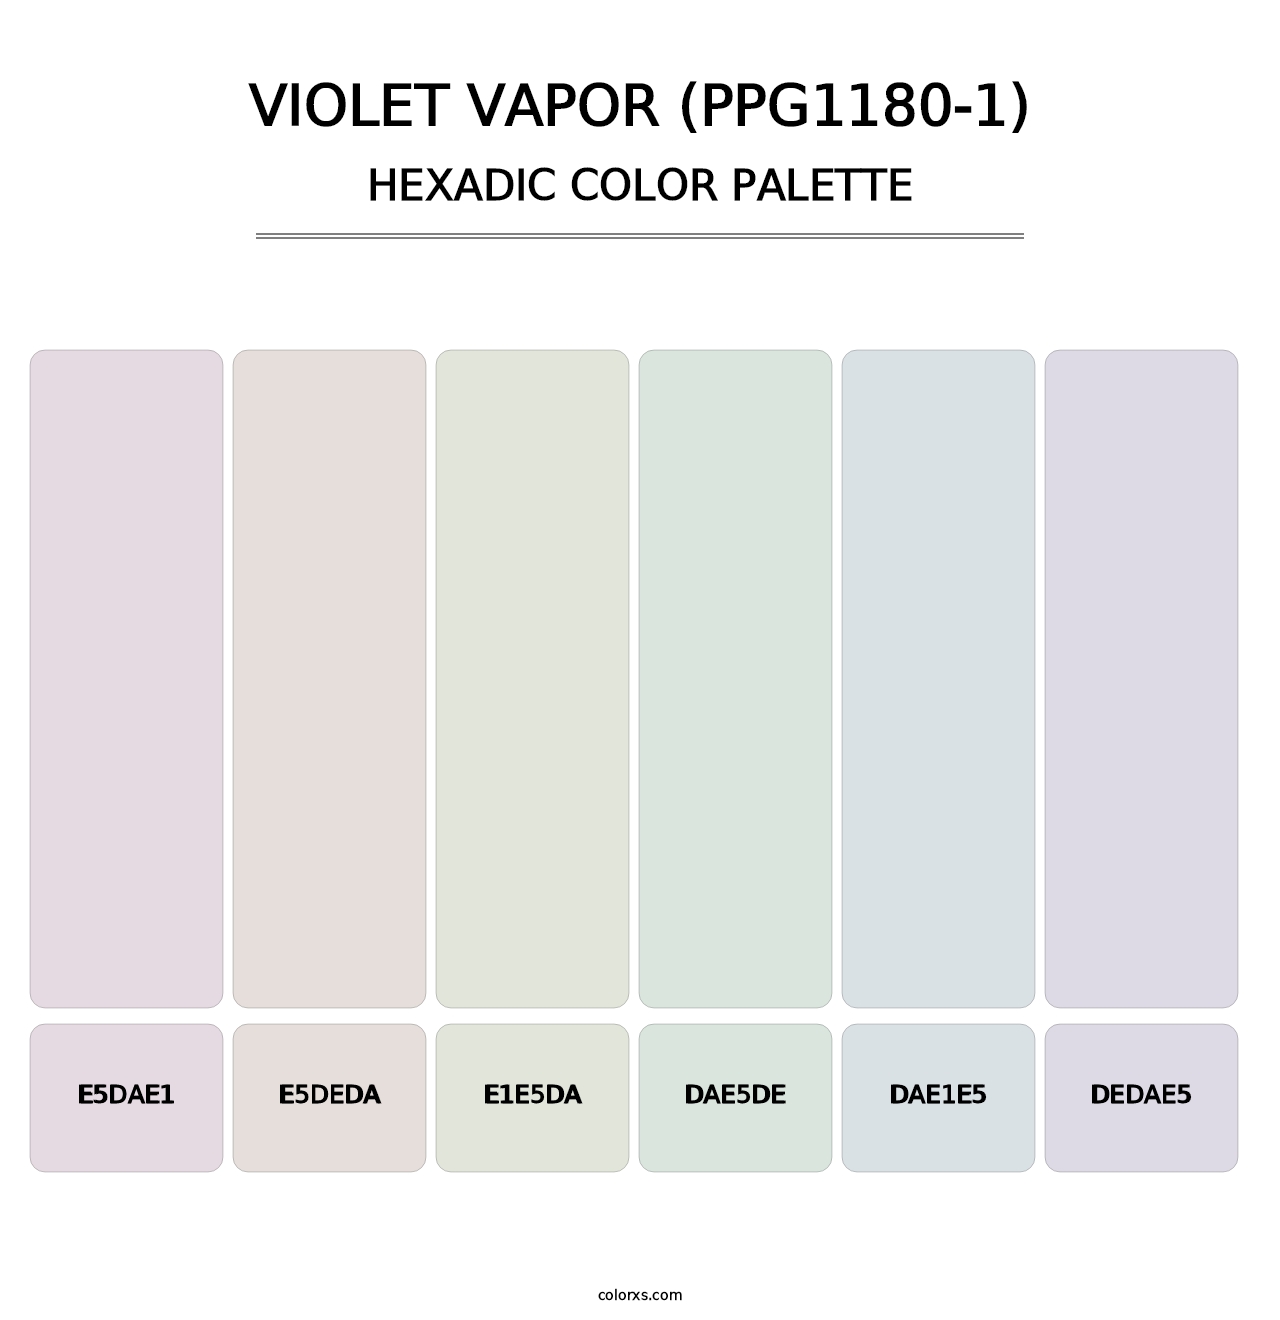 Violet Vapor (PPG1180-1) - Hexadic Color Palette